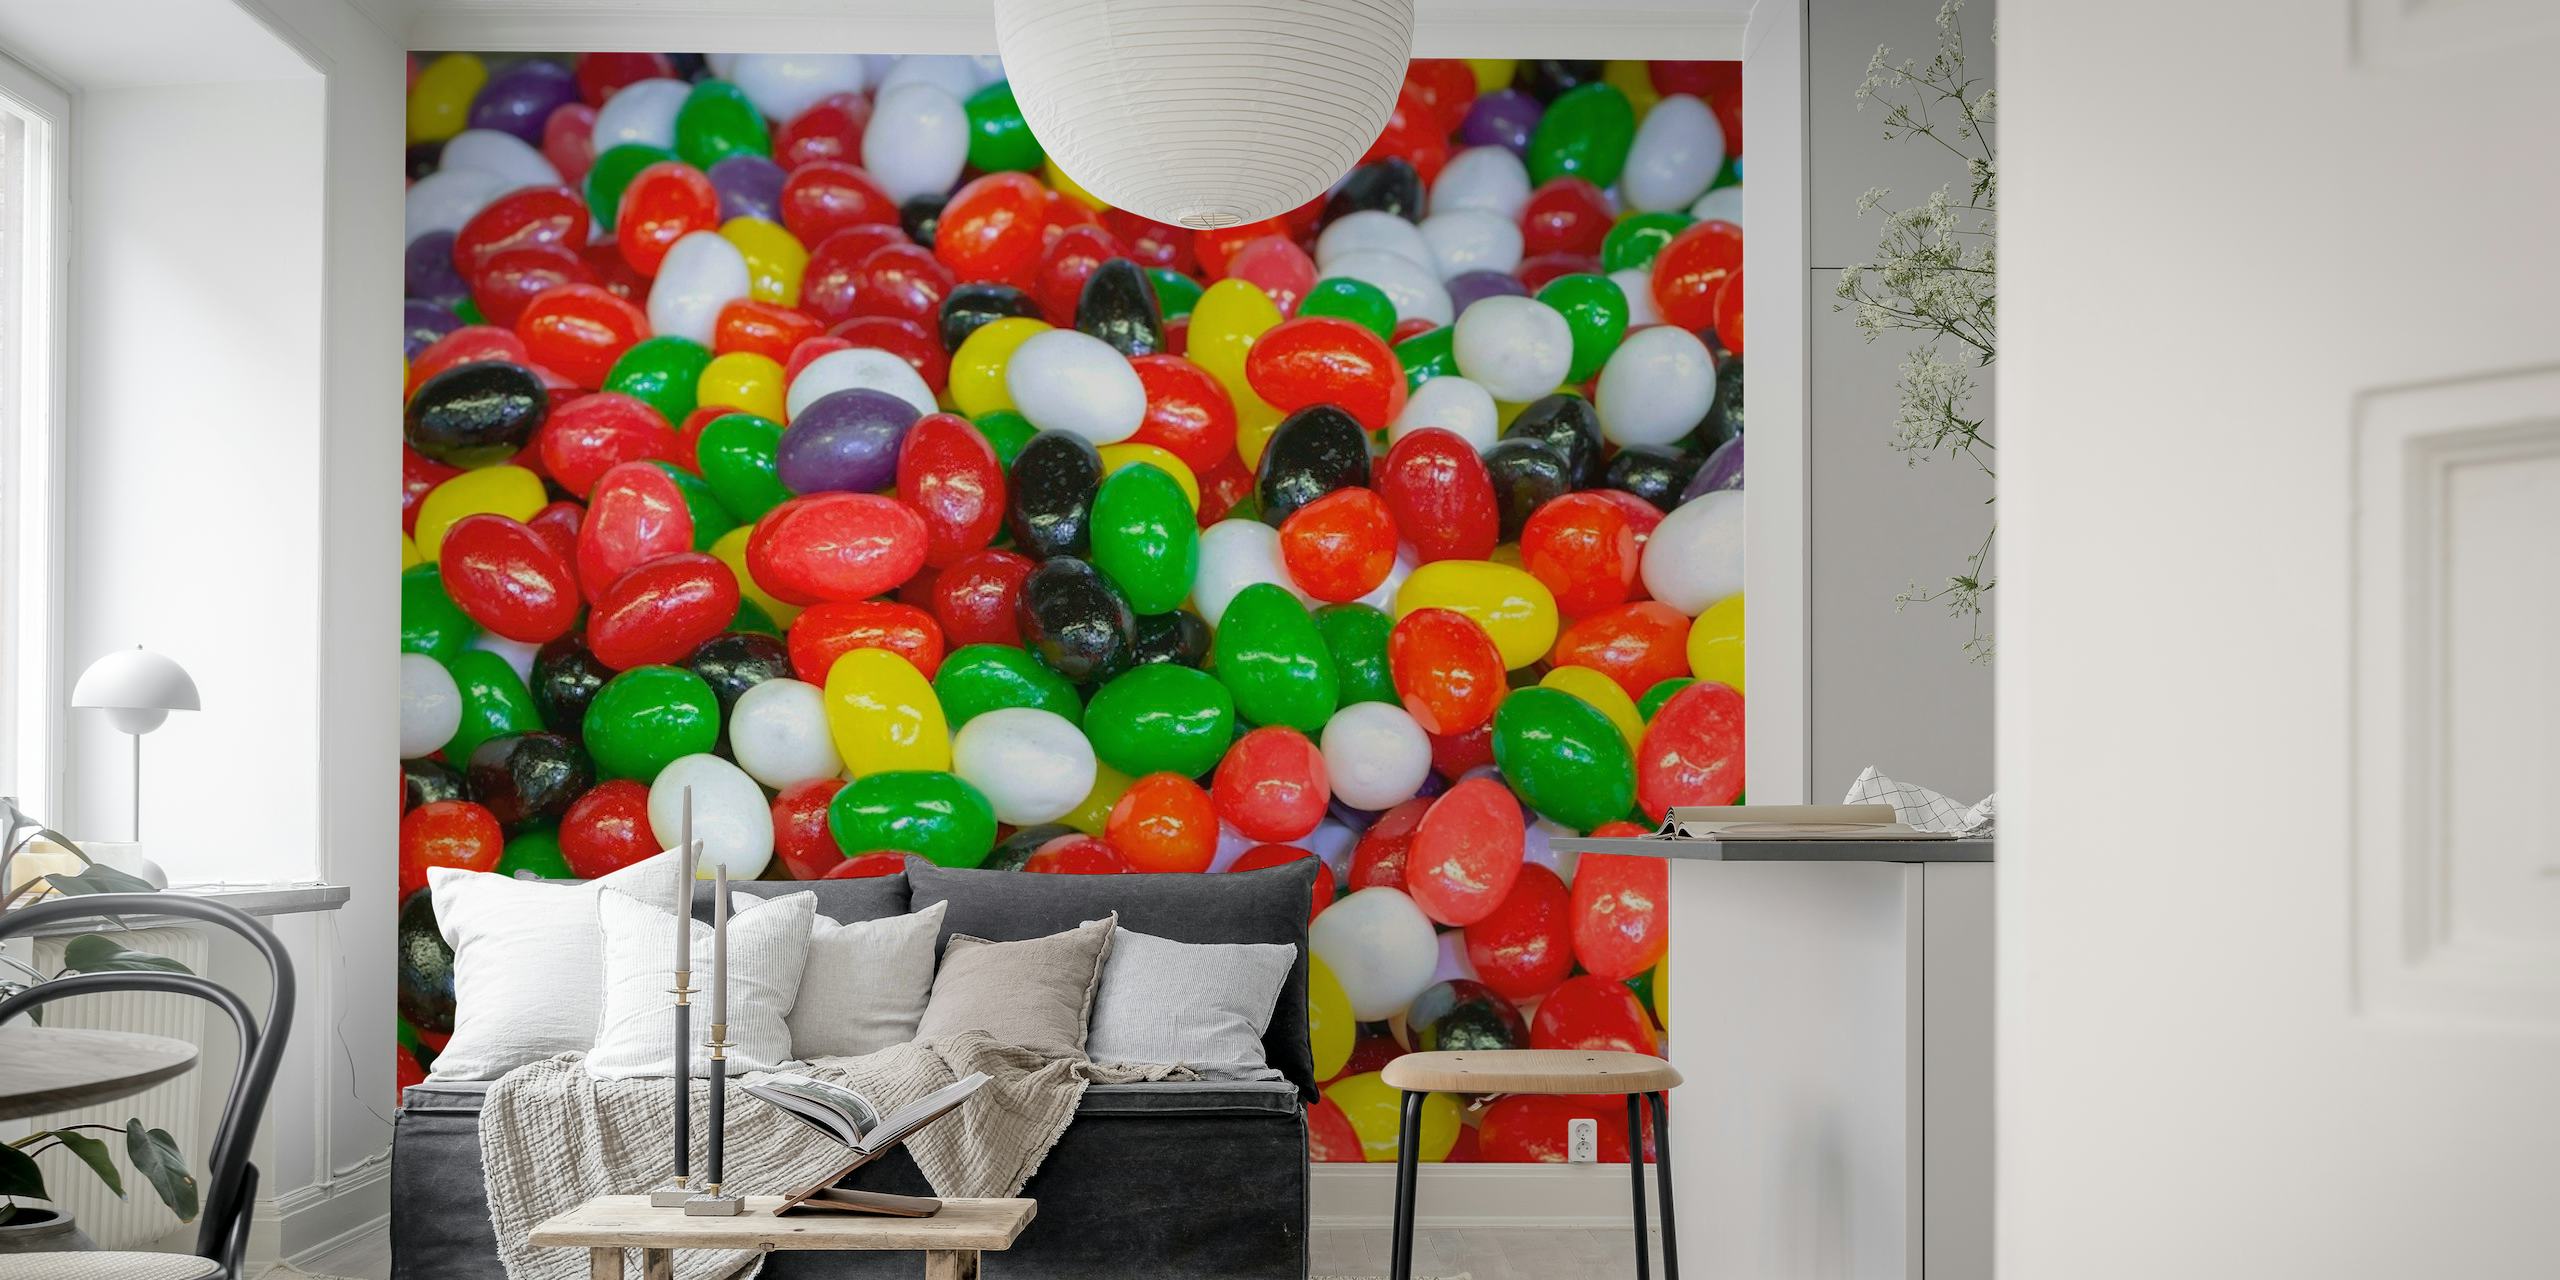 Fotomural vinílico de parede de doces coloridos variados para uma decoração vibrante